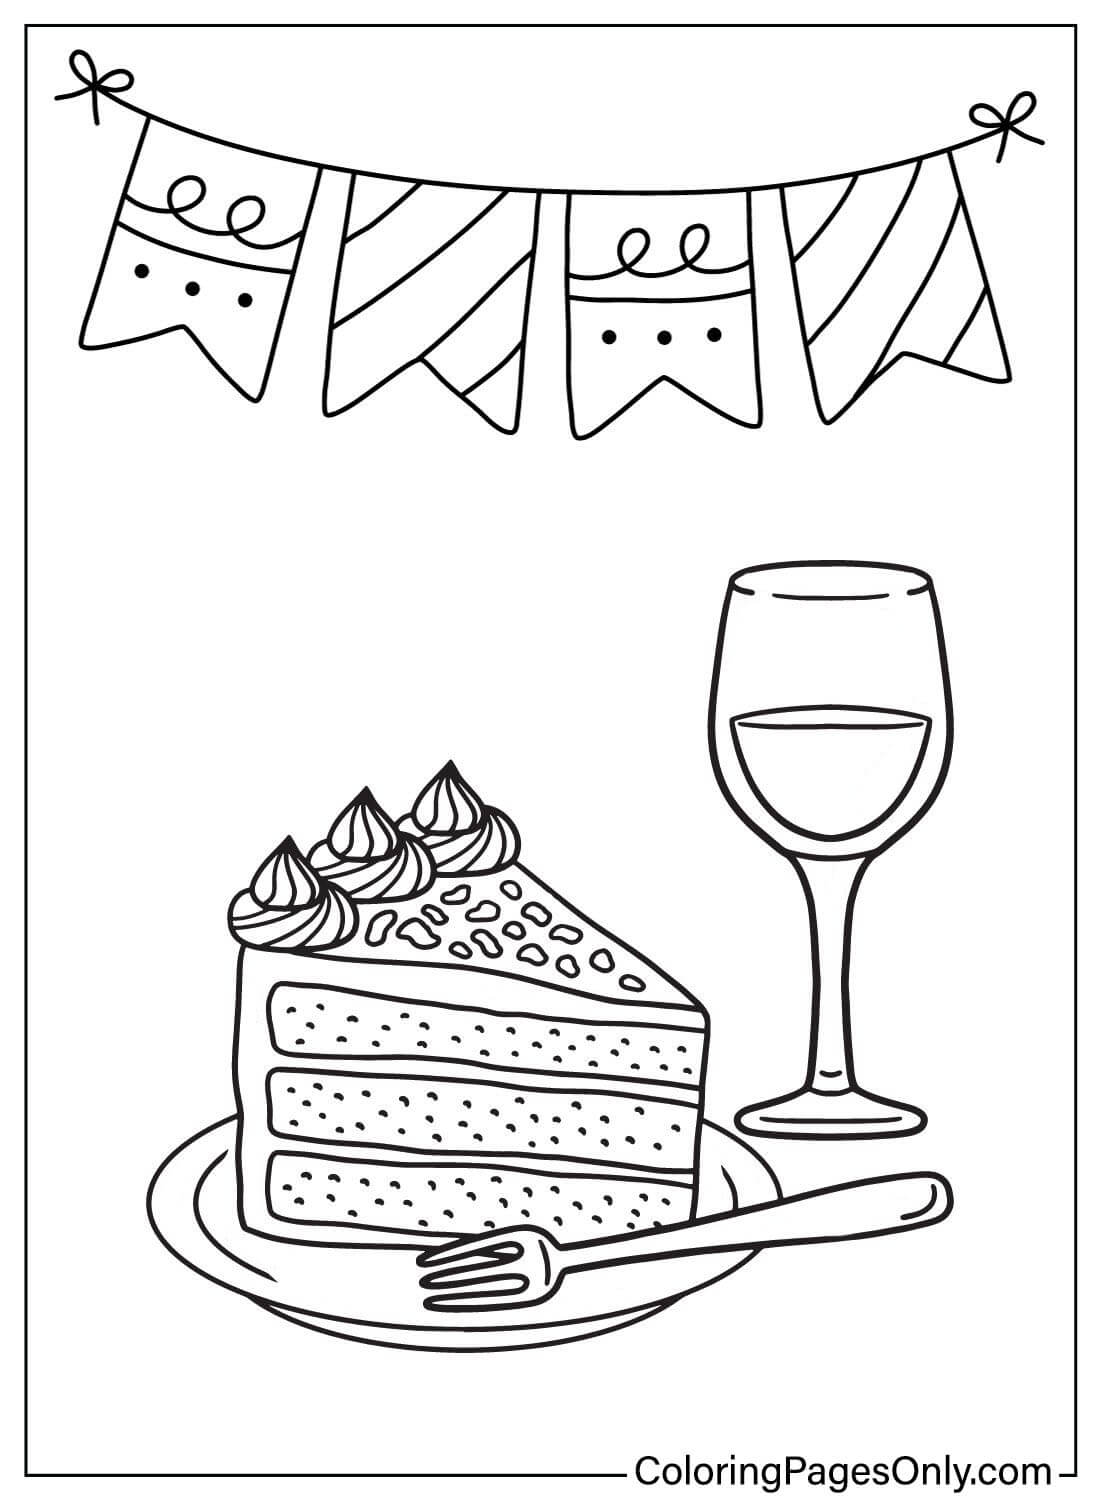 Página para colorear de pastel gratis de Cake